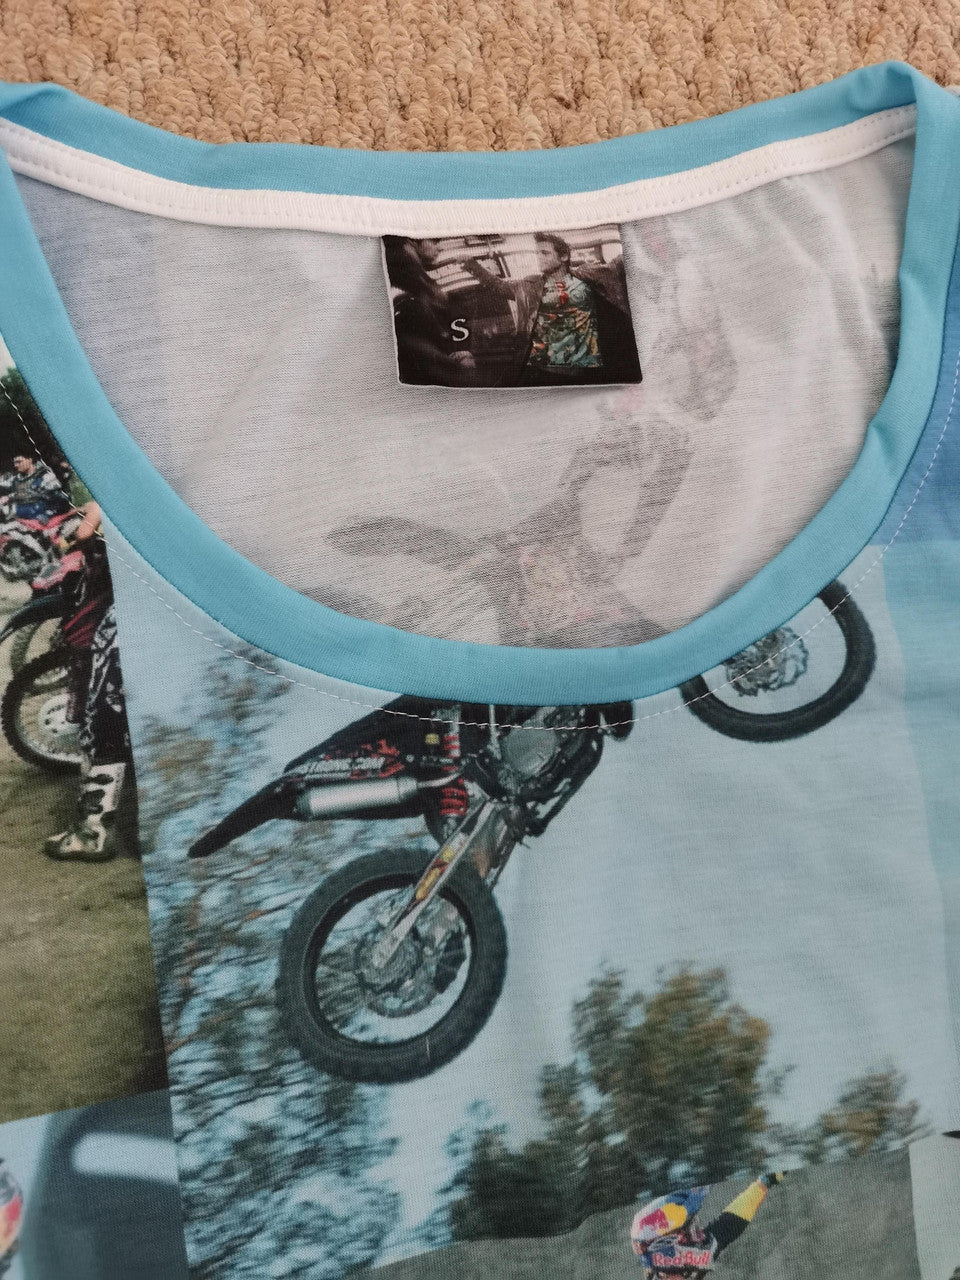 Fight Club MotoX KiSS Vest - Motocross Dirt Bike - Motorbike - Tyler Durden Inspired - men's gift, present for biker Brad Pitt